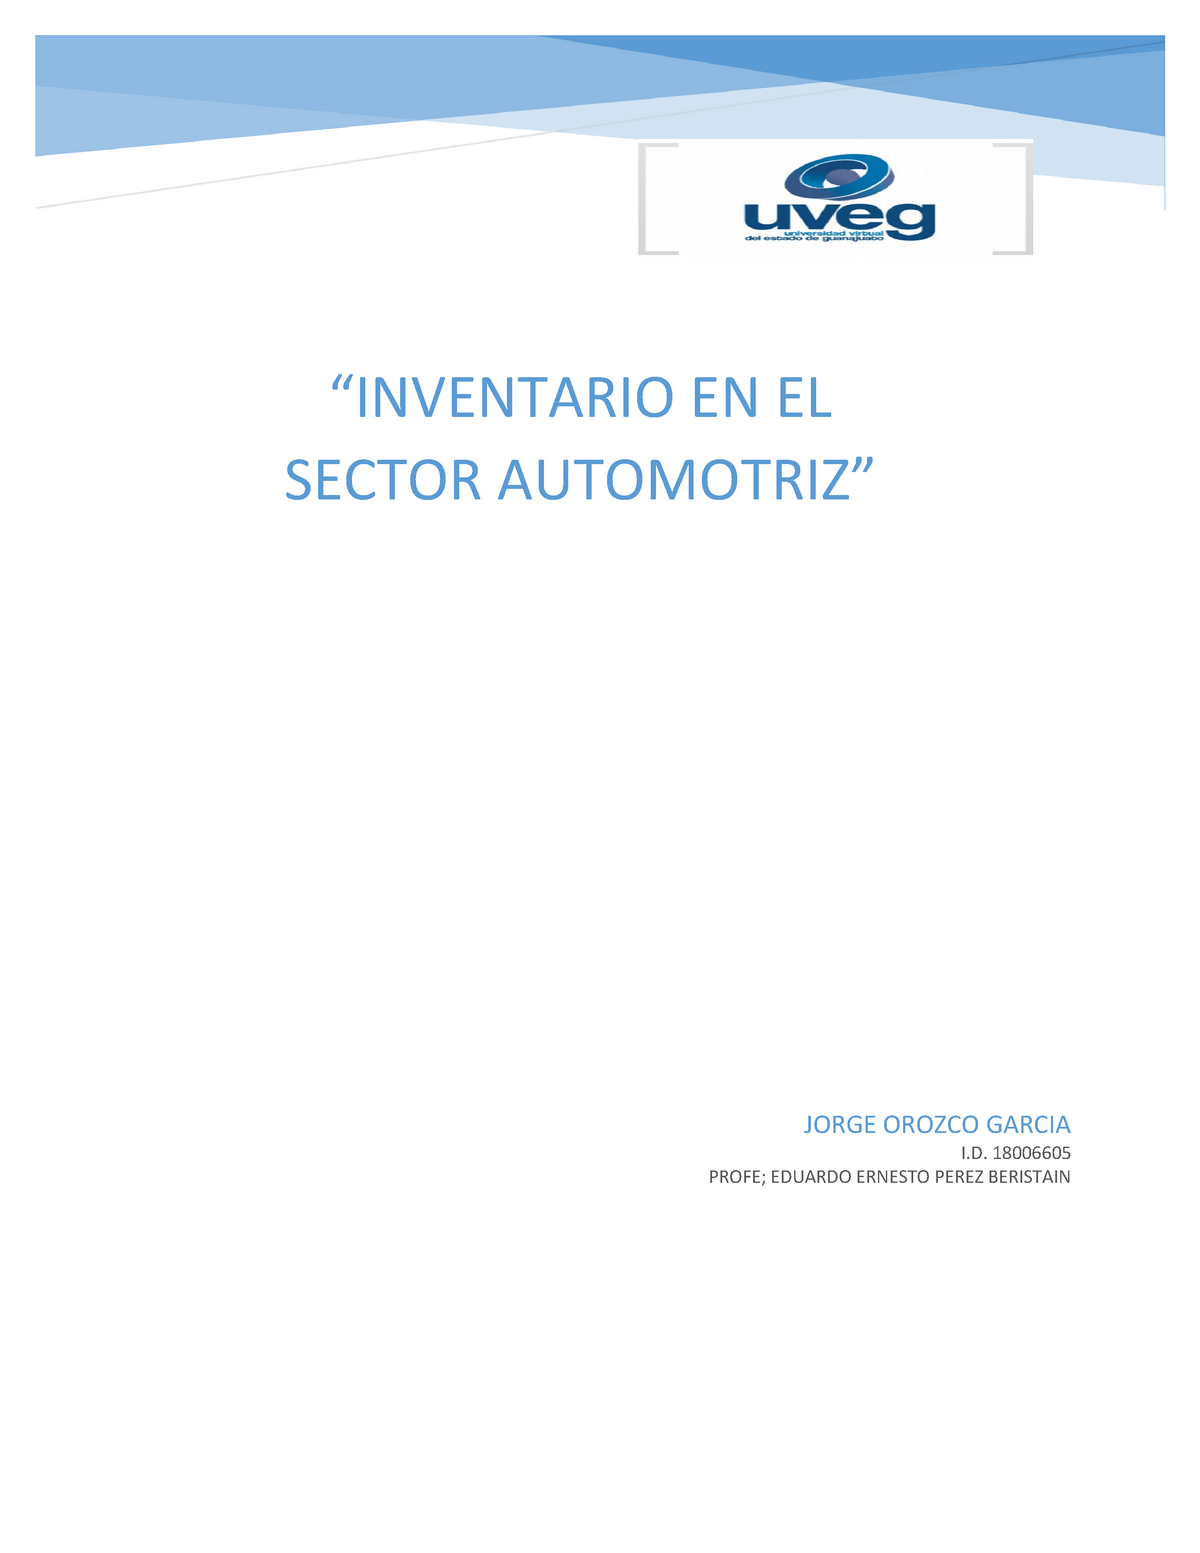 Inventario Automotriz Uveg “inventario En El Sector Automotriz” Jorge Orozco Garcia I 9760